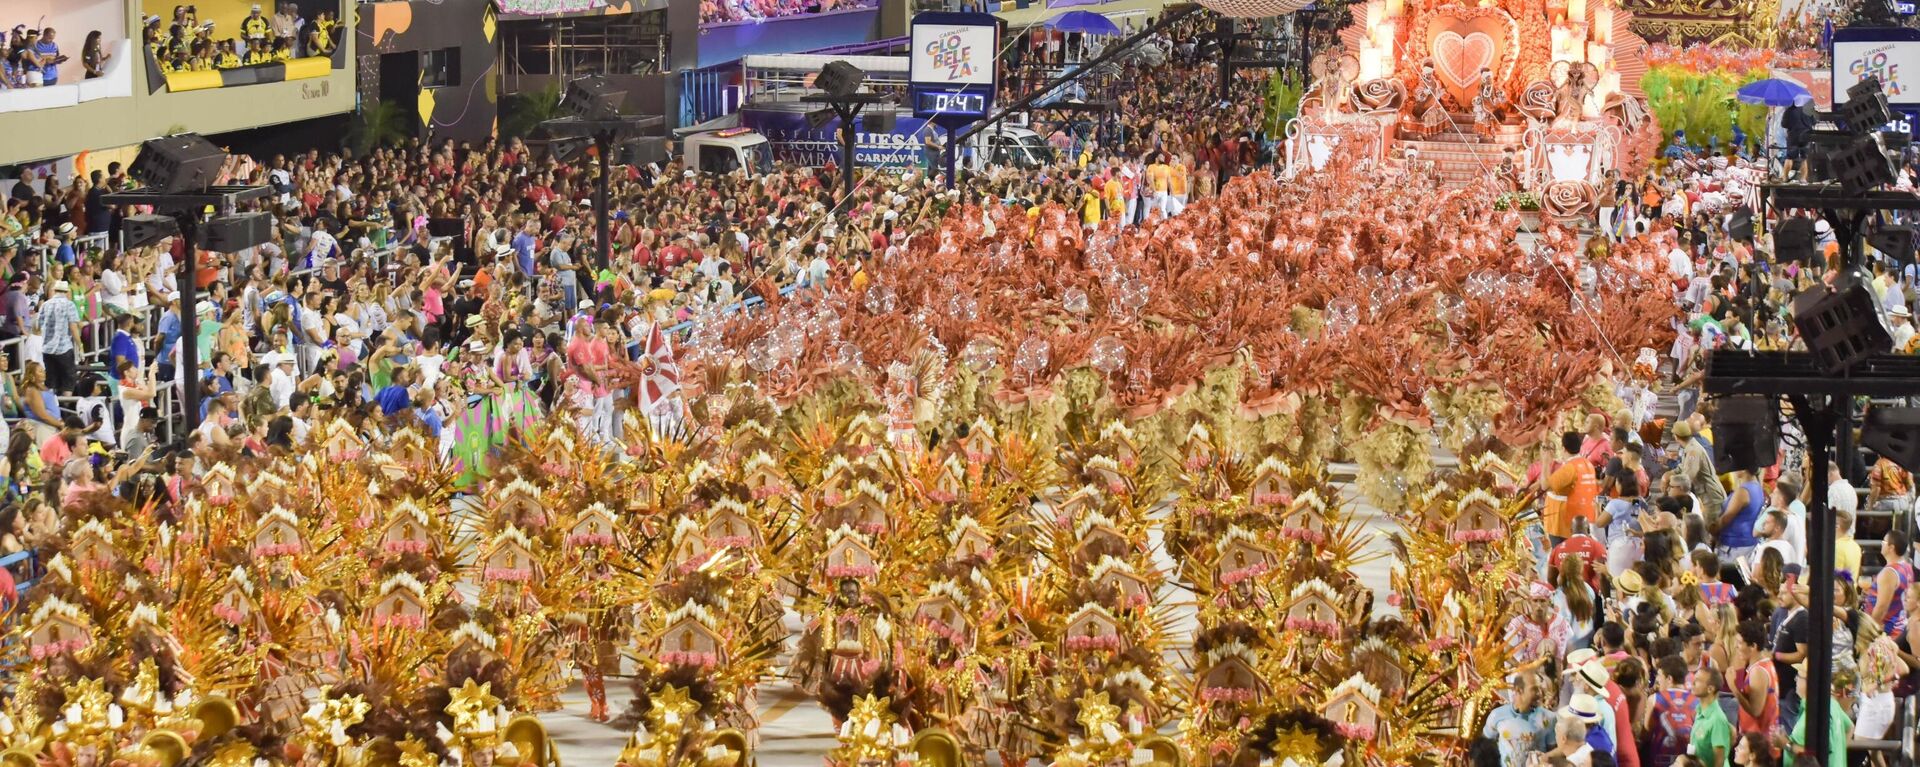 Apresentação da escola de samba Viradouro no último desfile de Carnaval realizado antes da pandemia, no dia 23 de fevereiro de 2020, na Marquês de Sapucaí, sambódromo do Rio de Janeiro - Sputnik Brasil, 1920, 21.01.2022